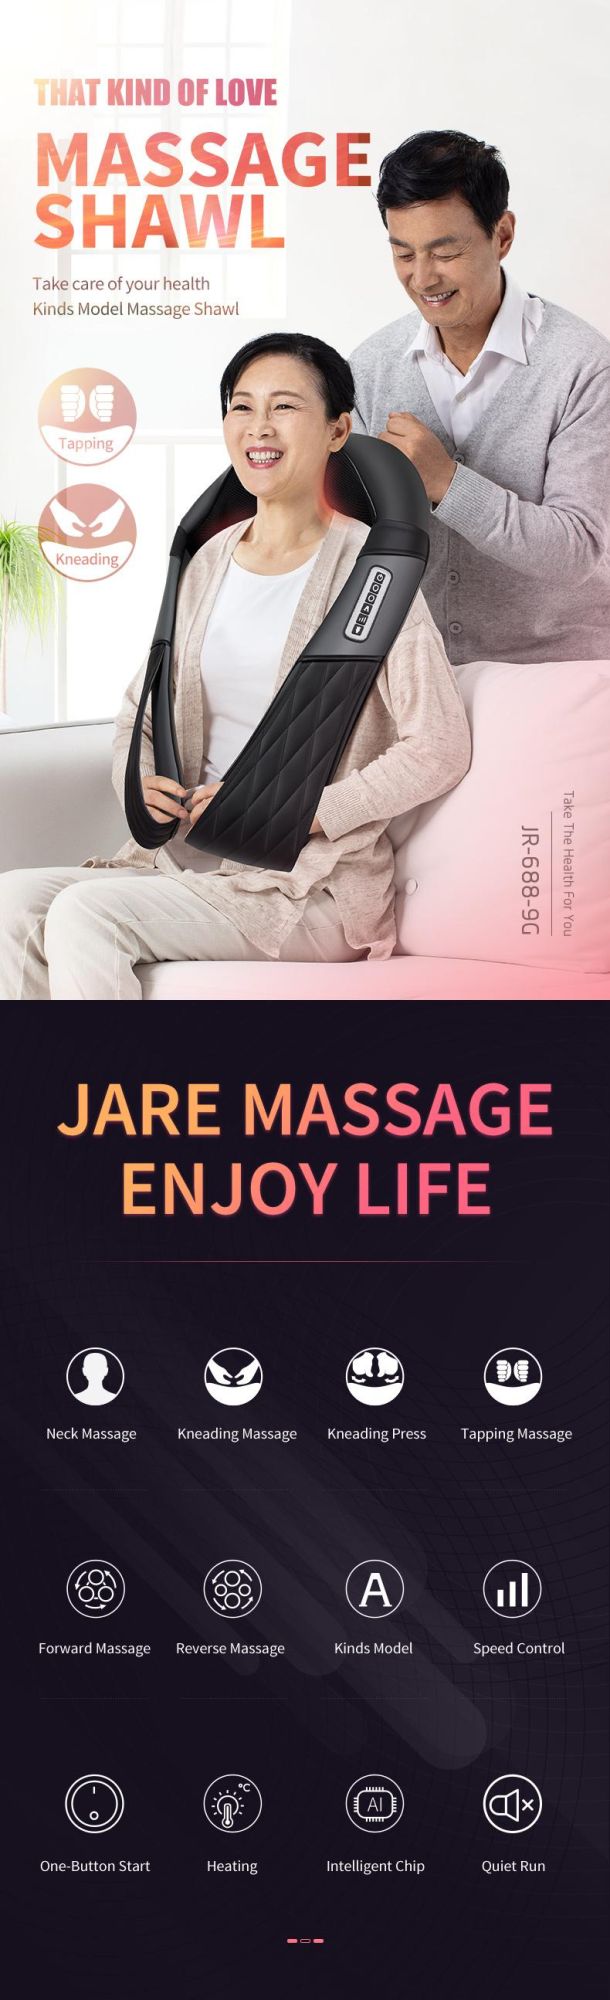 Kneading Full Body Massage Belt Neck and Shoulder Massager Cervical Massager Shawl